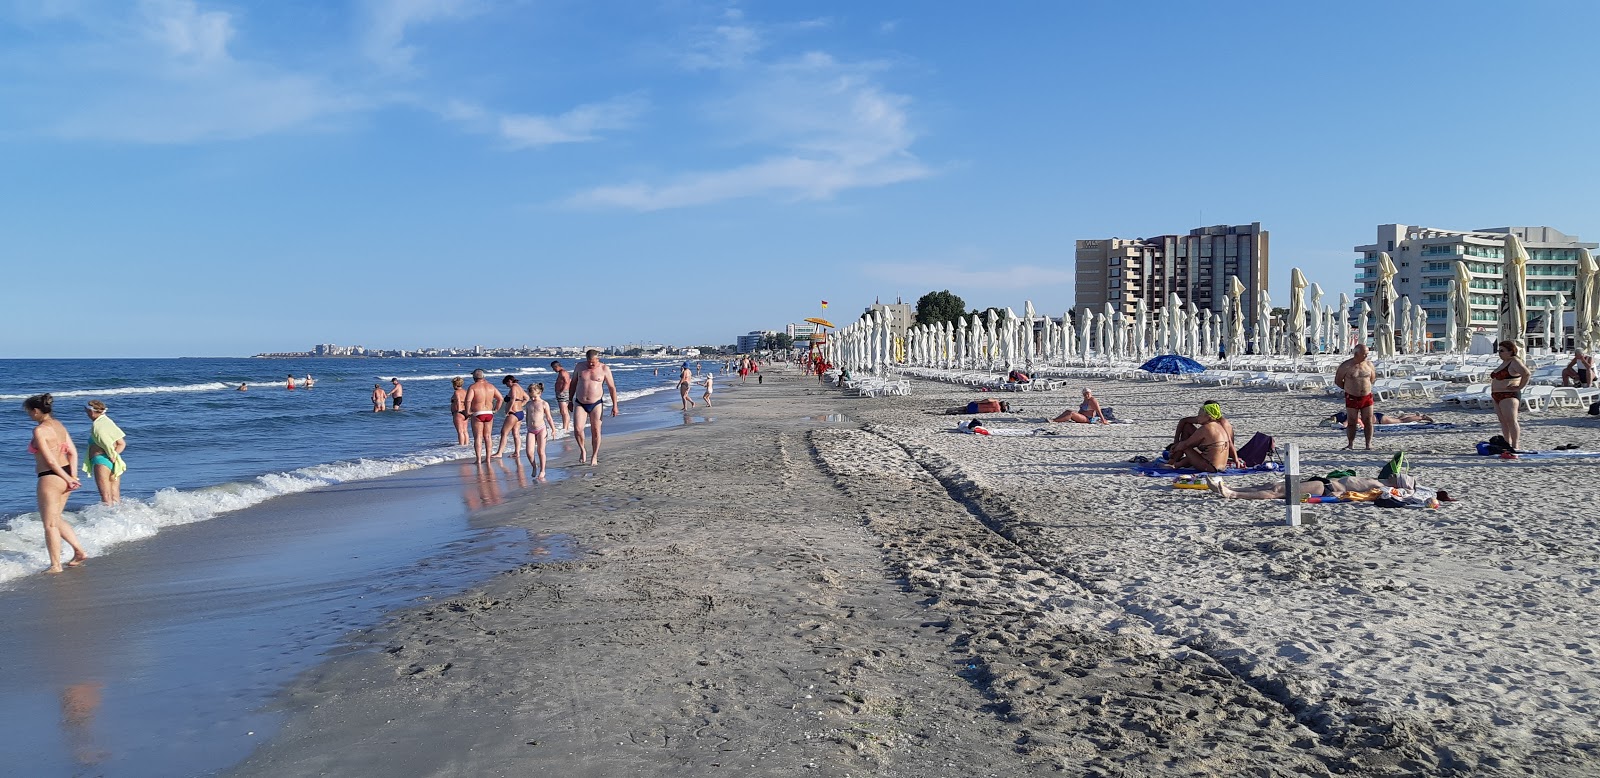 Kudos Plajı'in fotoğrafı parlak kum yüzey ile